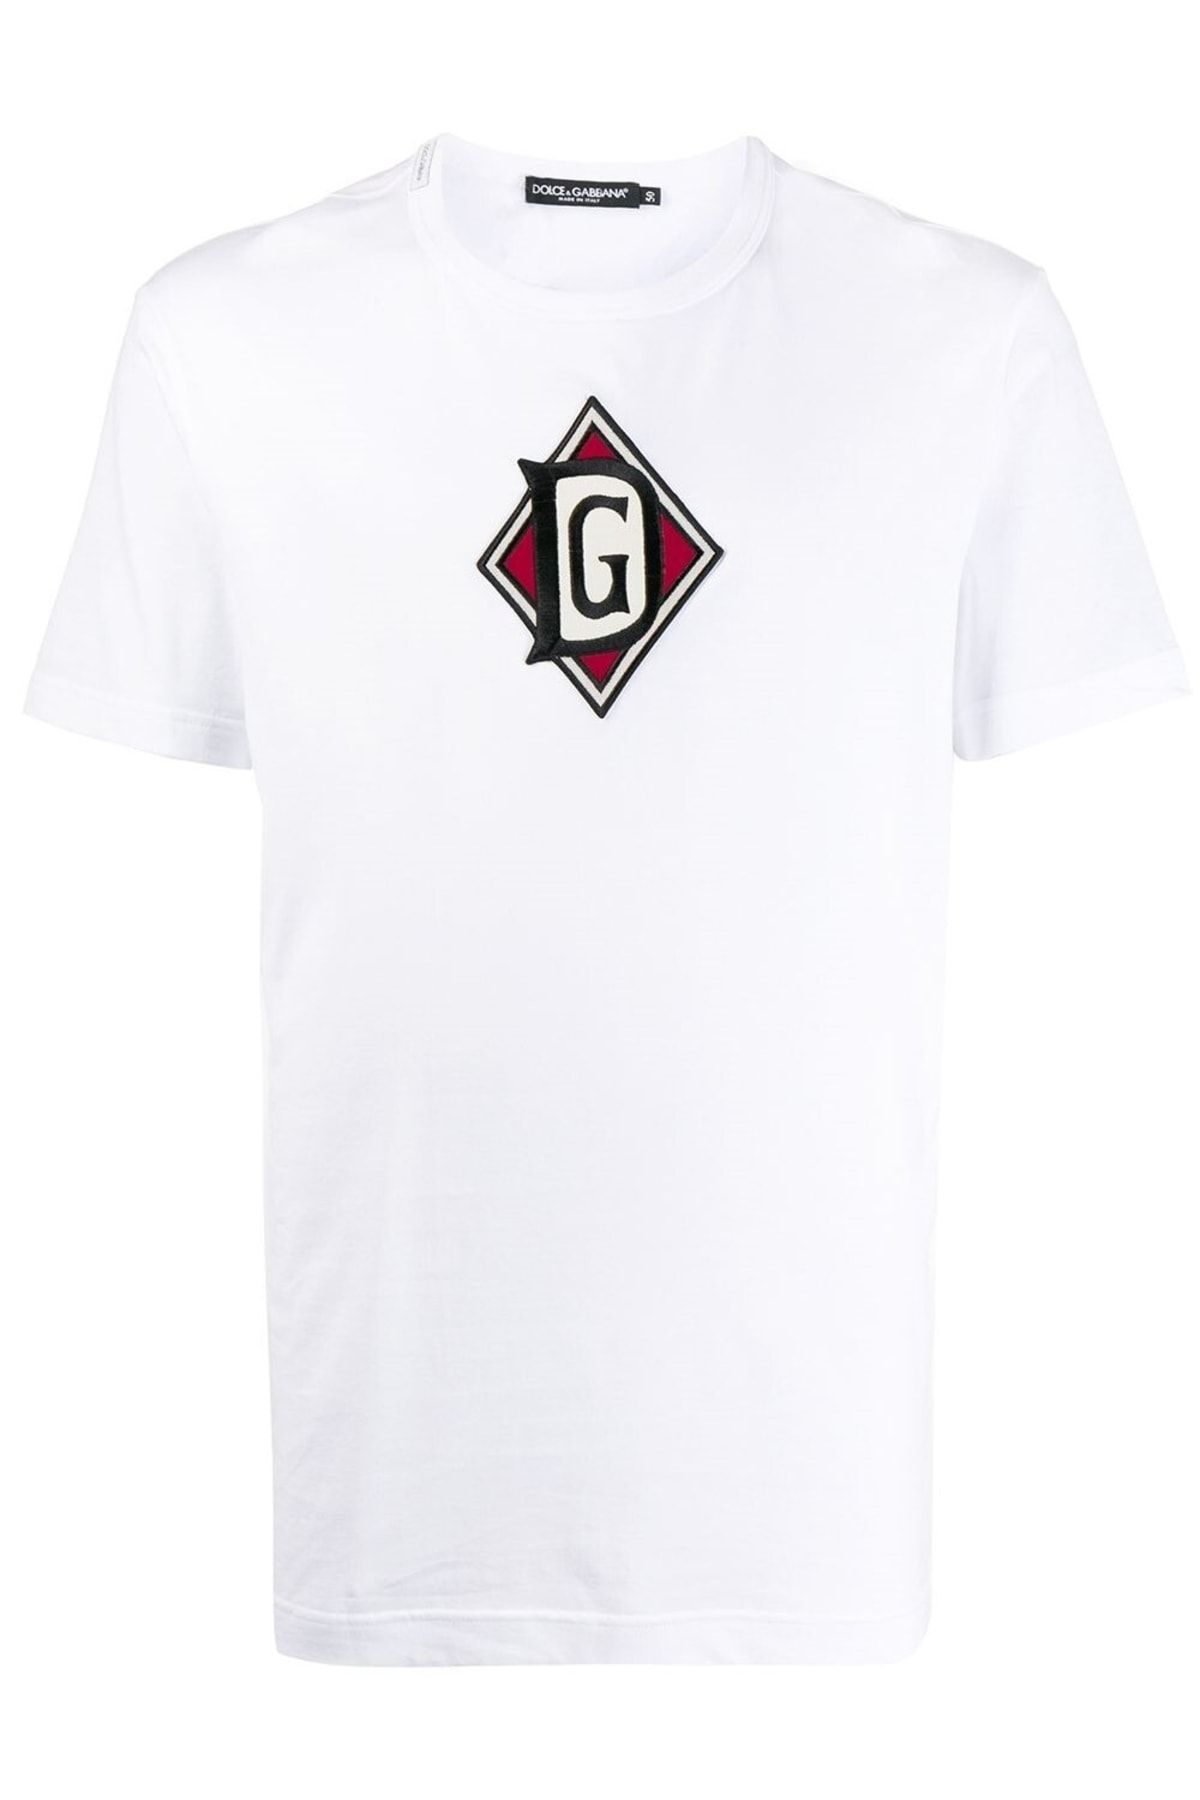 Dolce&Gabbana Dolce & Gabbana Logo Patch T-shirt G8kbazg7vap